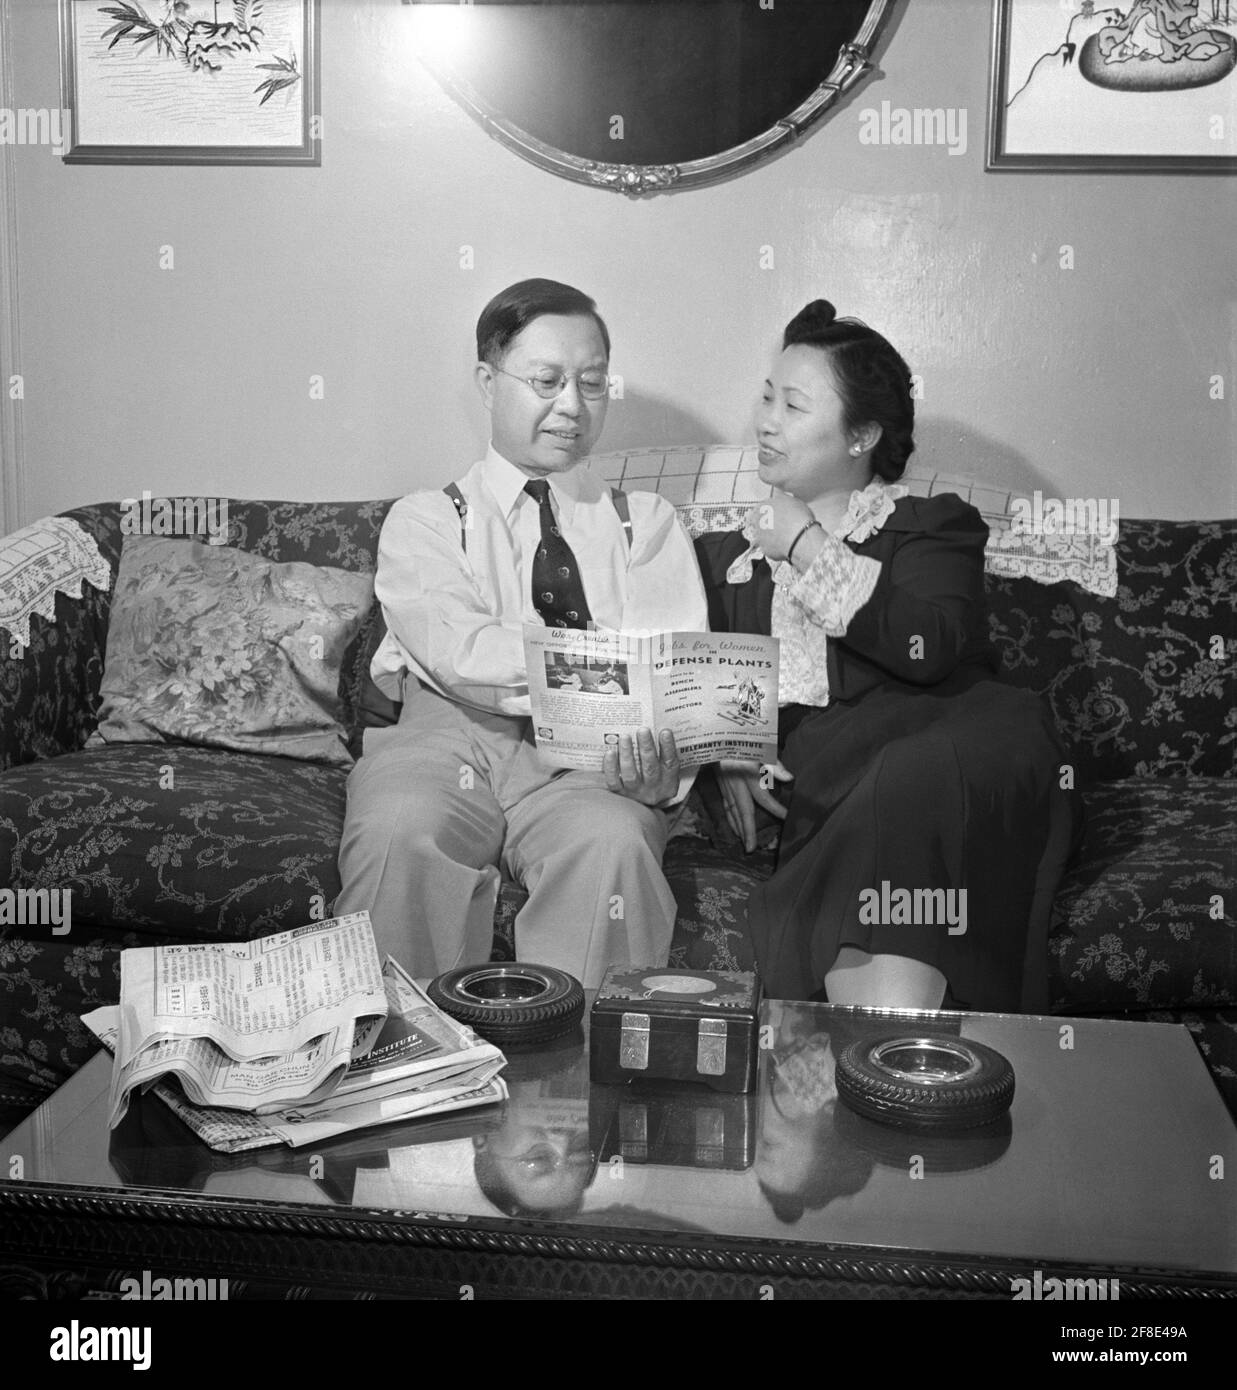 Herr fing, ein chinesisch-amerikanischer Händler, und seine Frau in ihrem Flatbush-Haus, Brooklyn, New York, USA, Marjory Collins, US Office of war Information, Mai 1942 Stockfoto